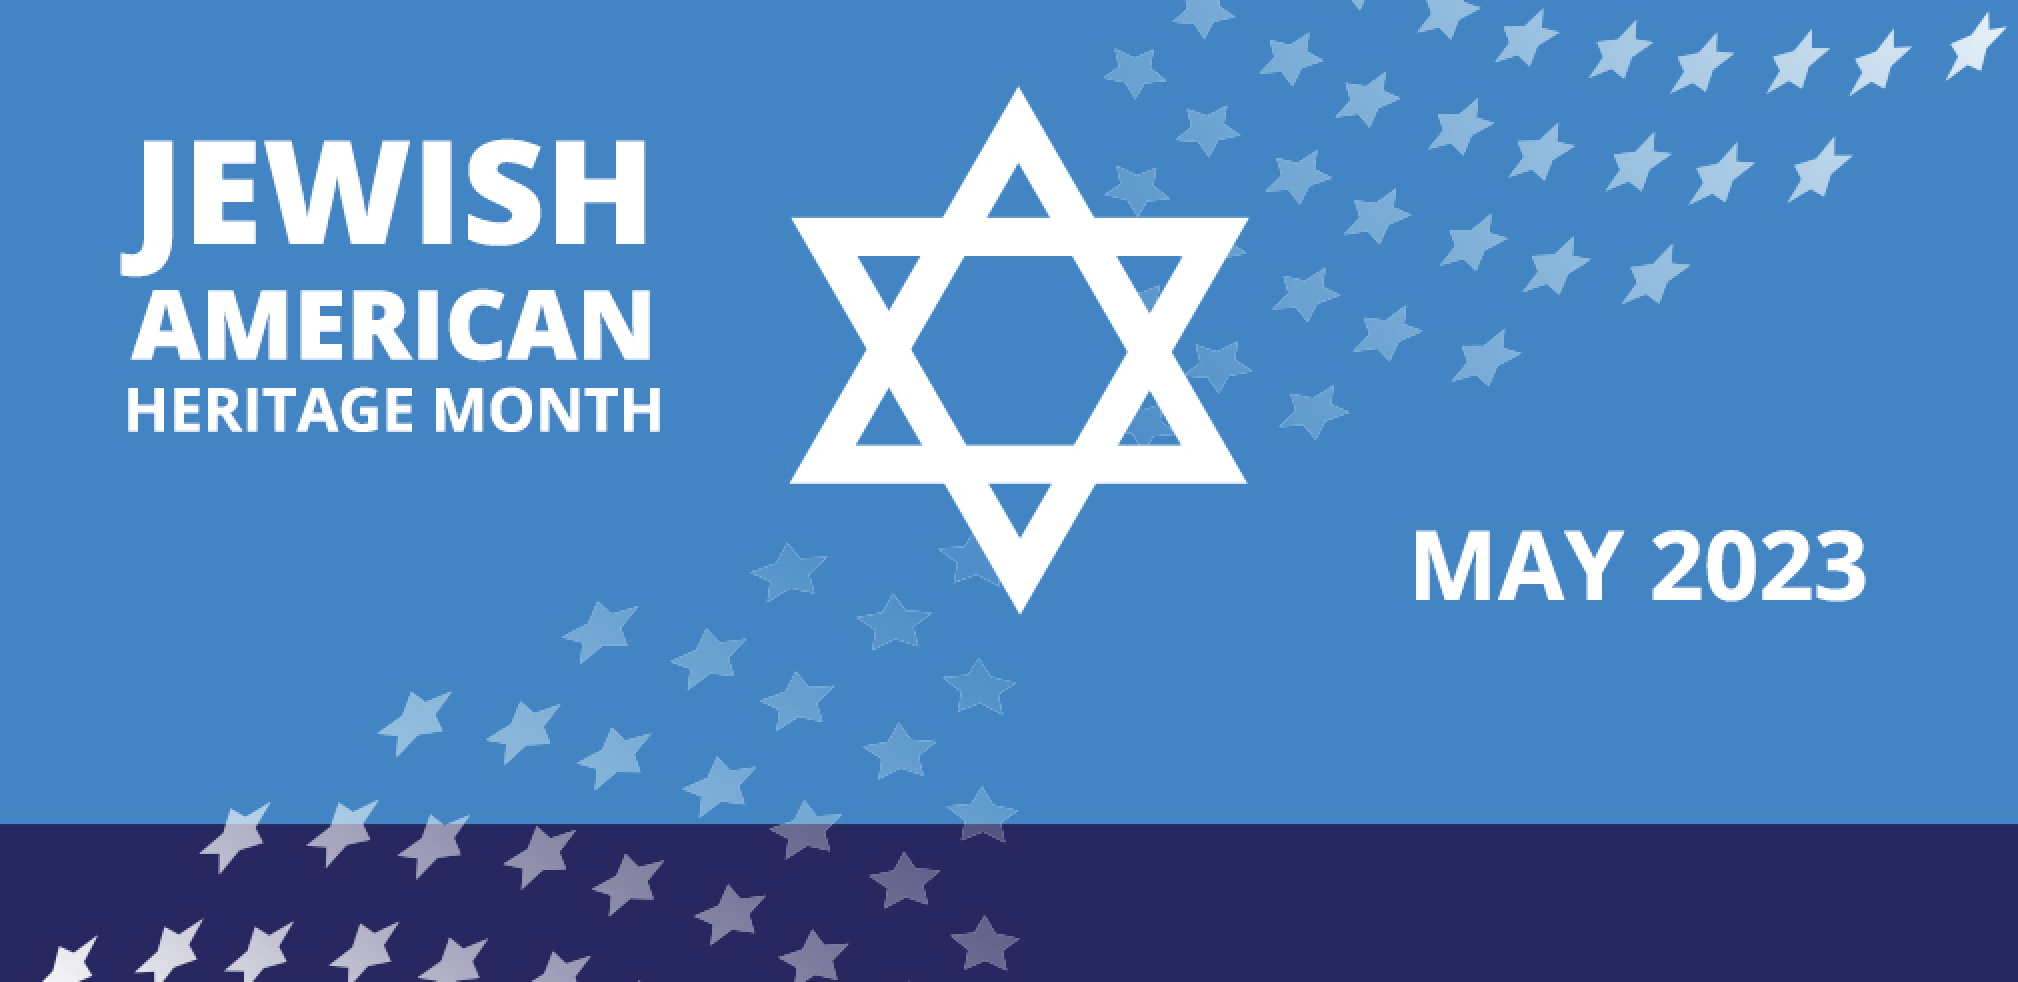 کلیرمونٹ نے یہودی امریکی ورثہ کا مہینہ منایا